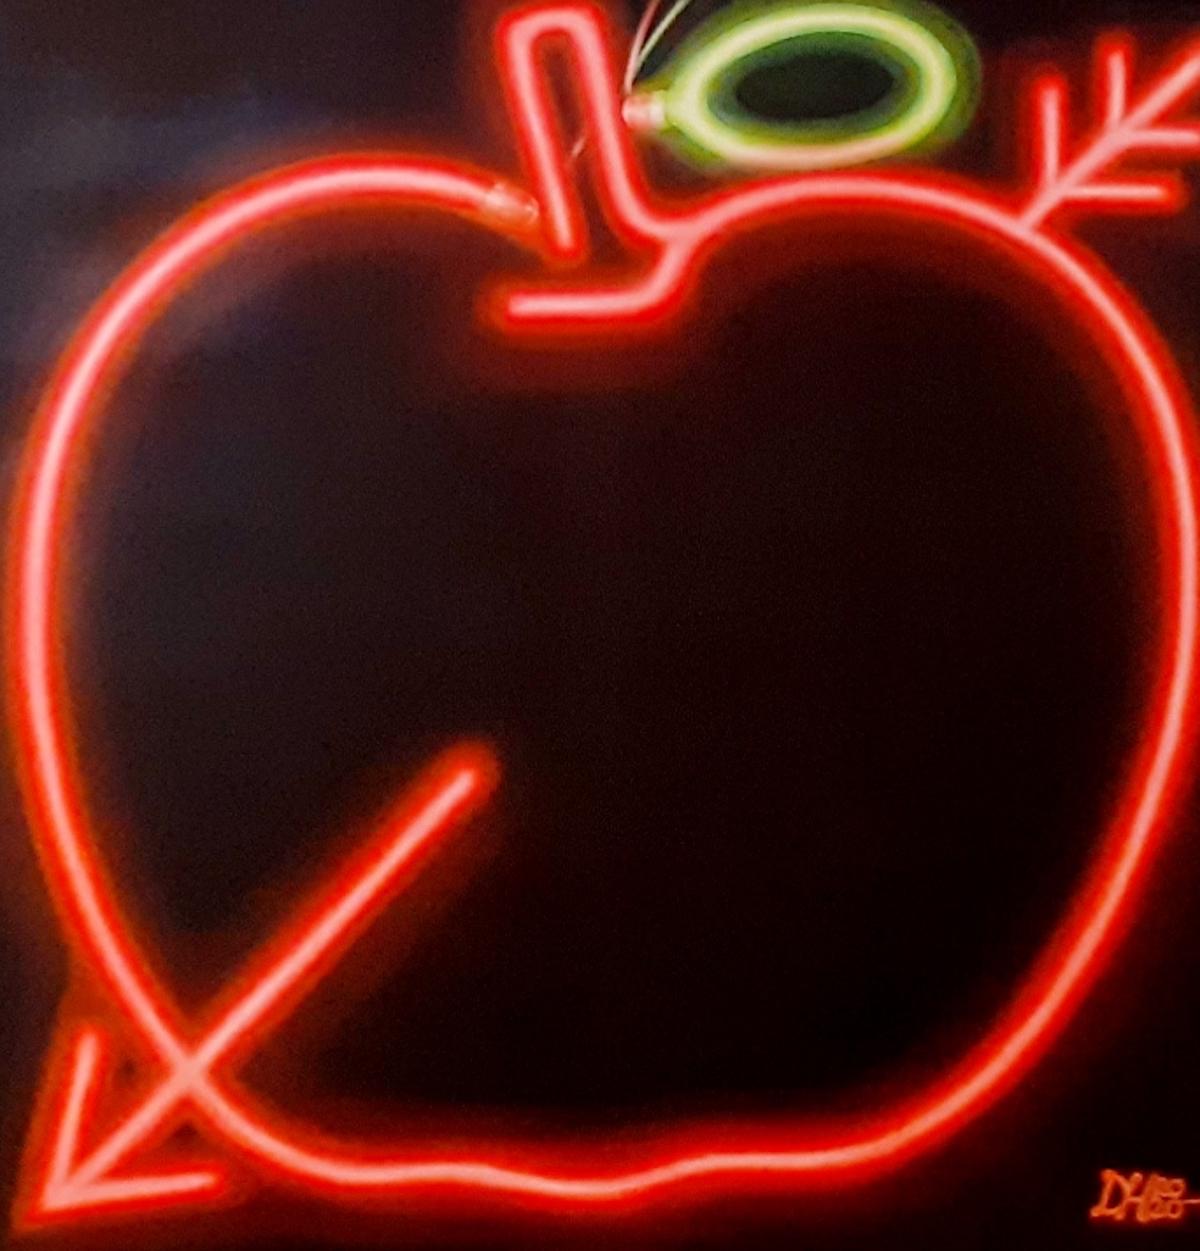 Ensemble dans les rêves électriques, peinture contemporaine, peinture d'enseigne au néon d'une pomme